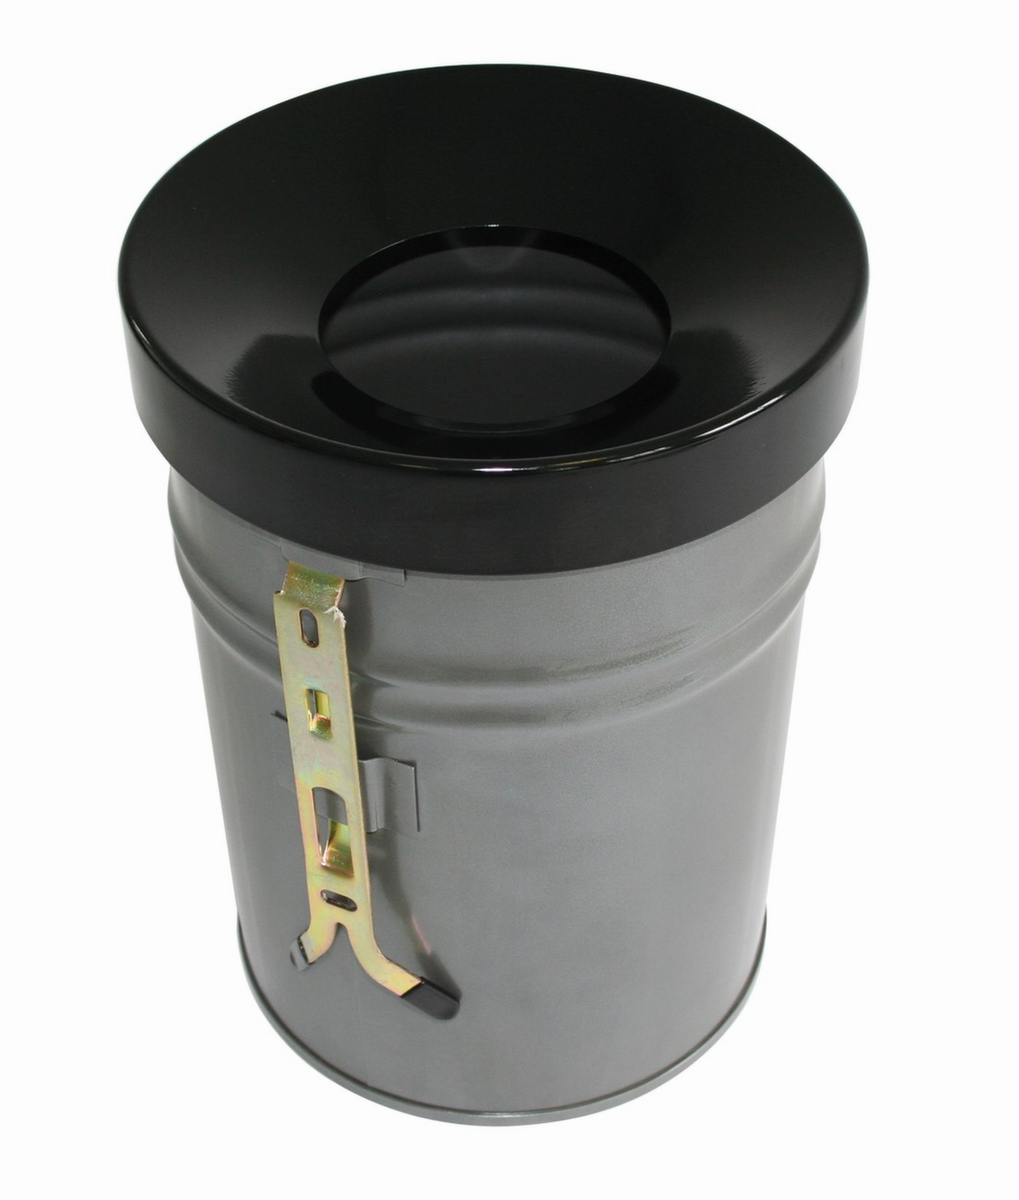 Zelfblussende afvalbak FIRE EX voor wandbevestiging, 16 l, lichtgrijs, bovendeel zwart  ZOOM